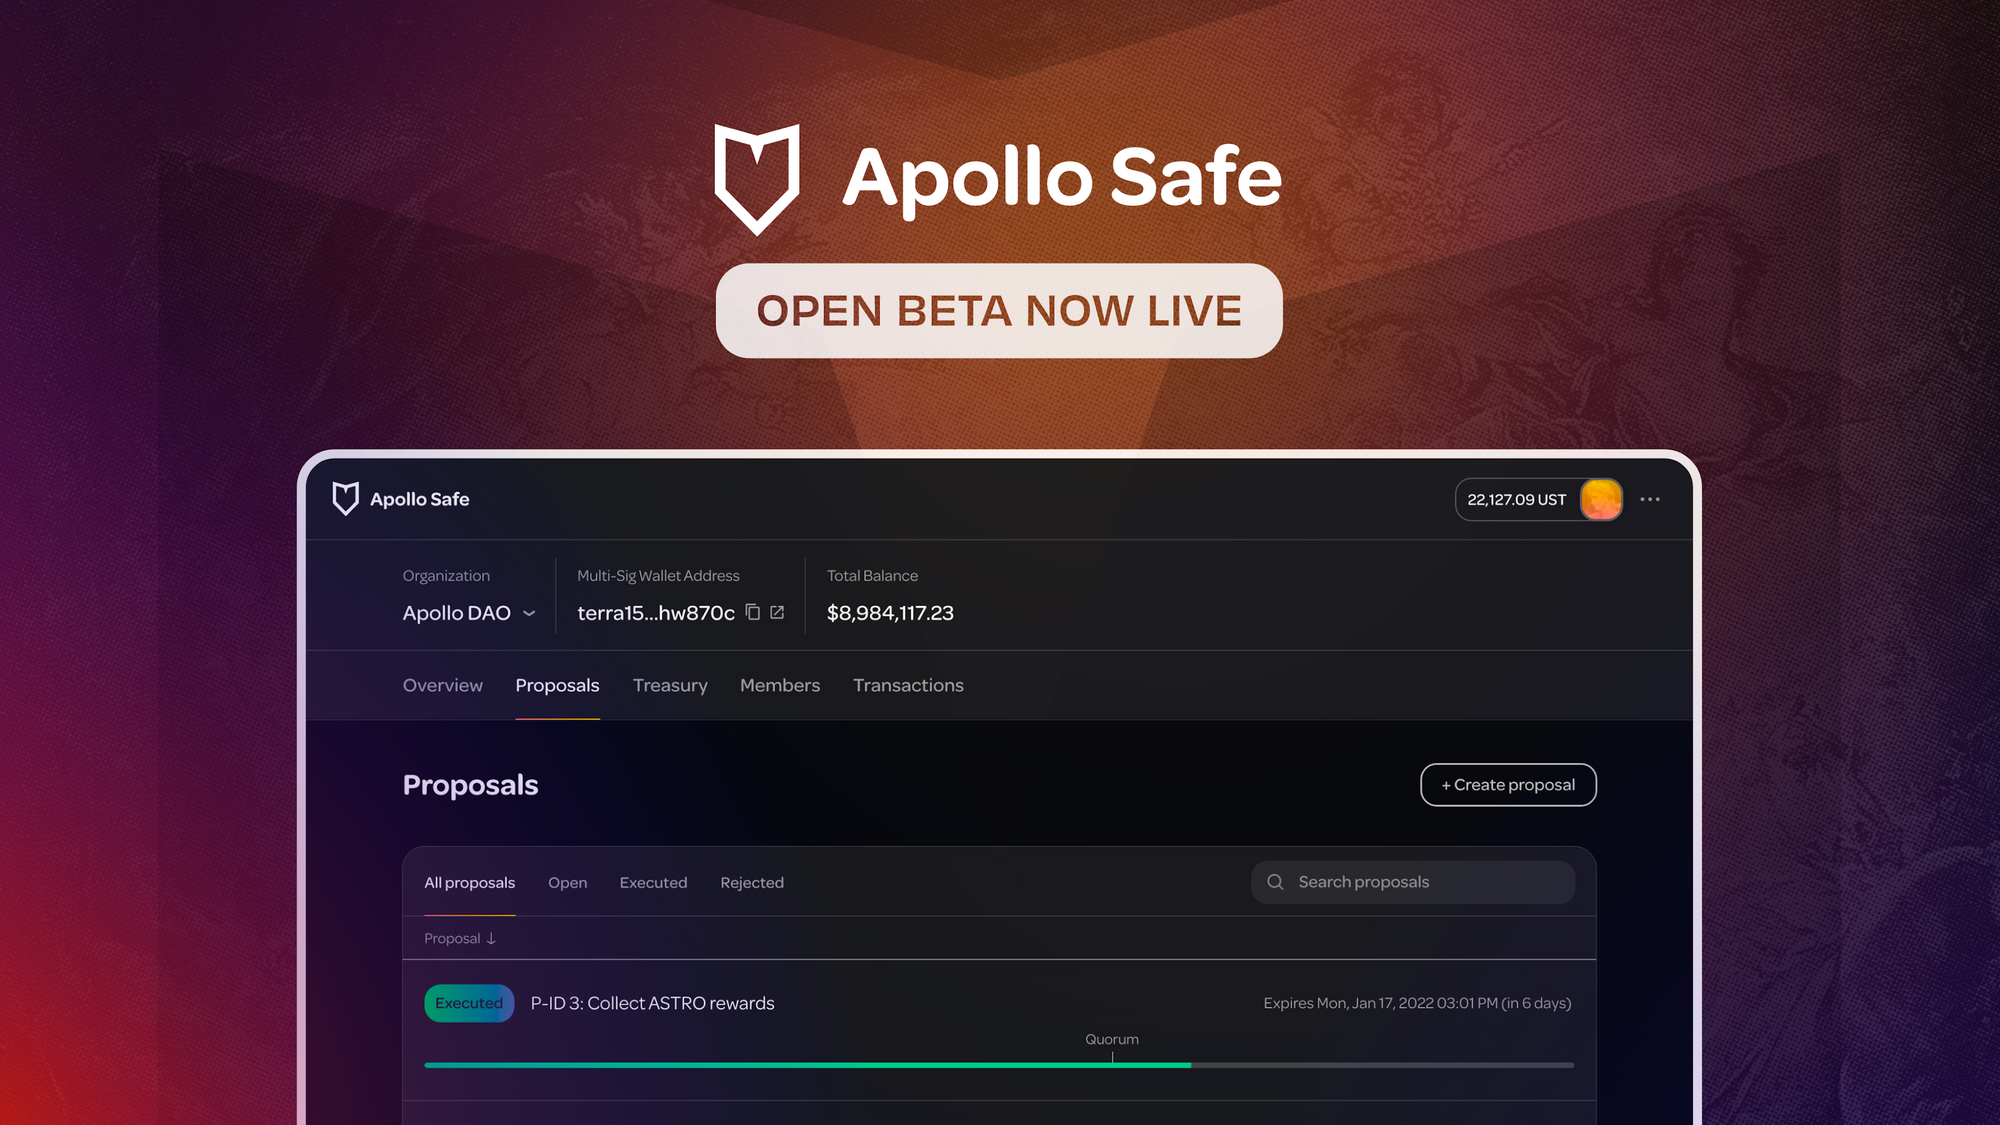 Apollo Safe Open beta